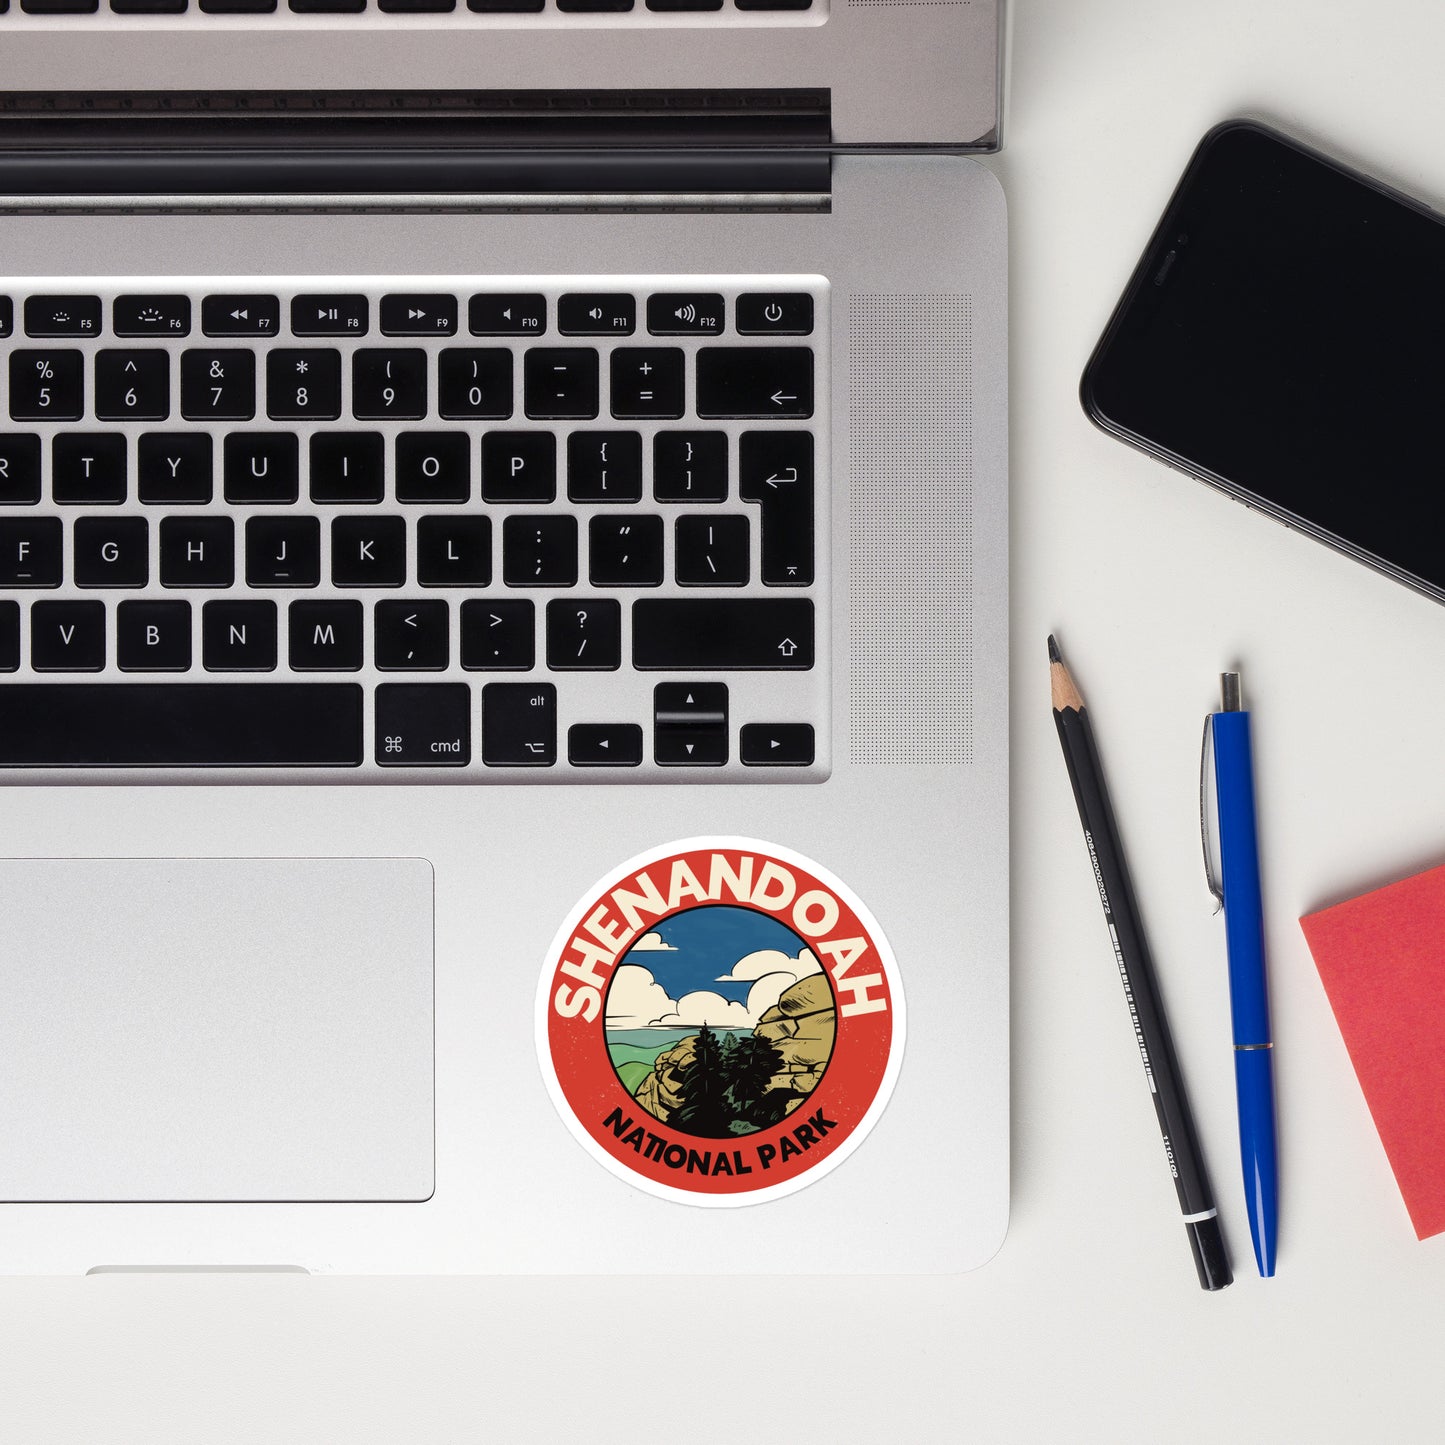 A sticker of Shenandoah National Park on a laptop